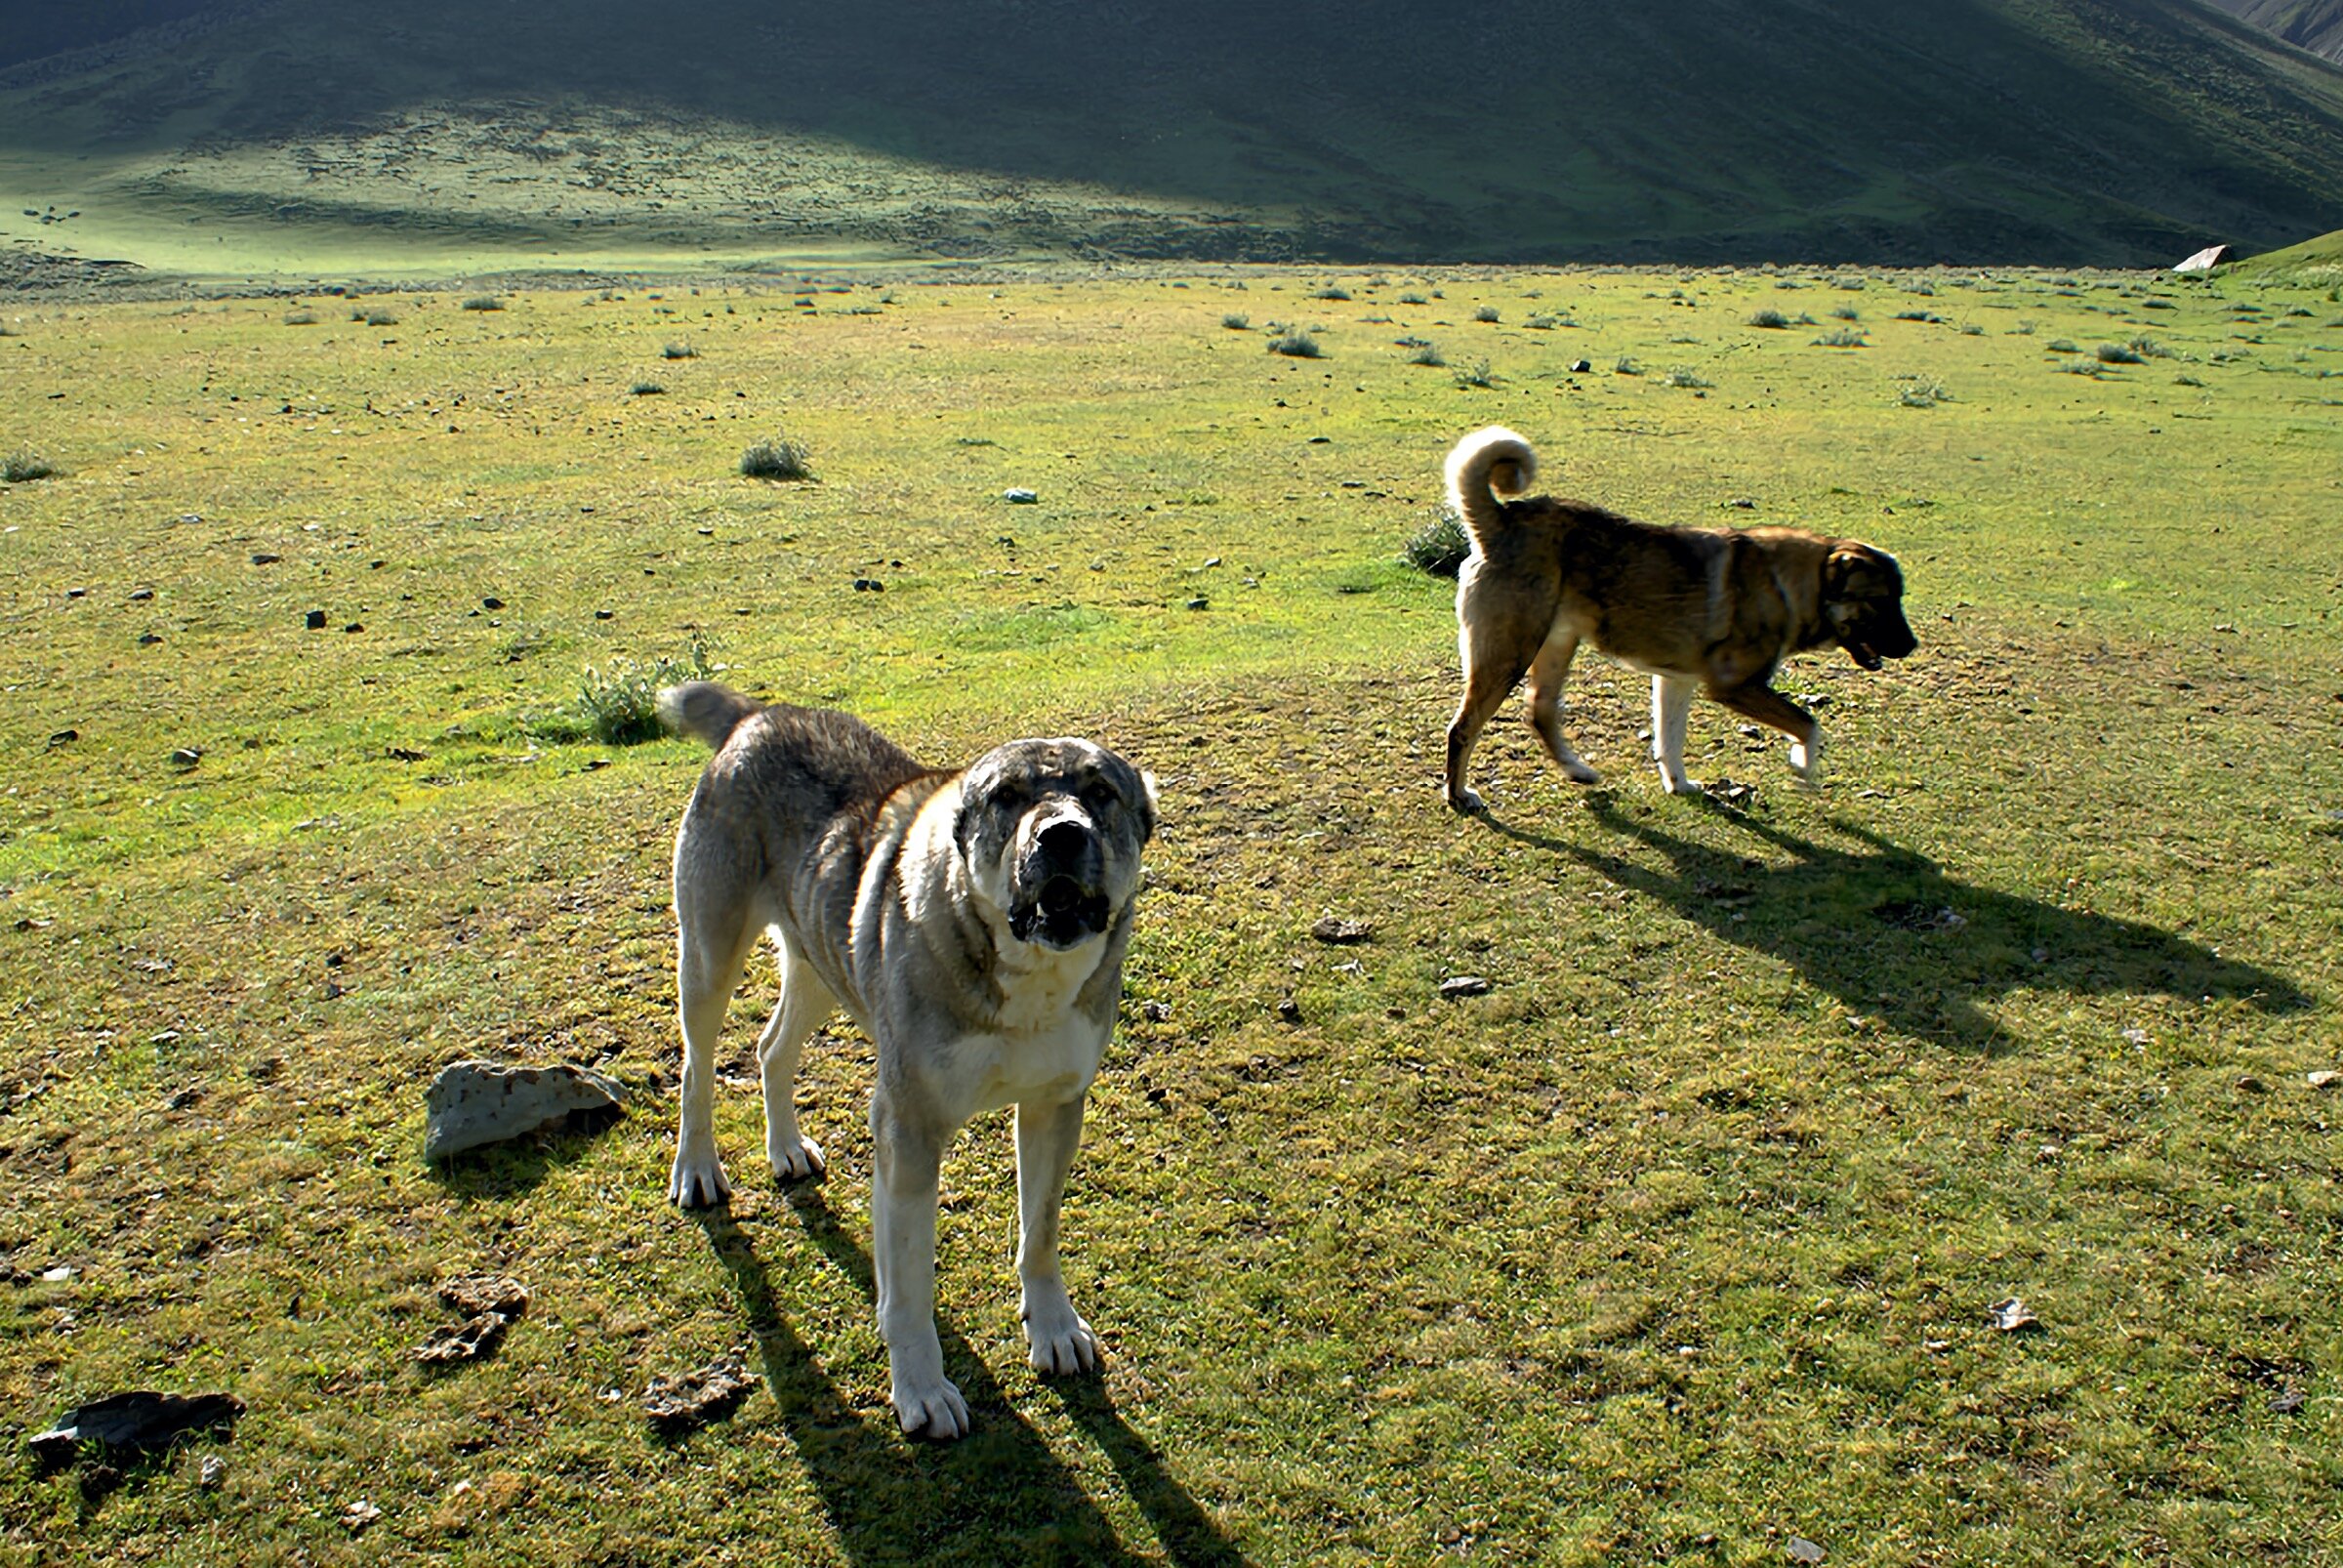 Кавказская овчарка и Азиатский алабай: сравнение пород